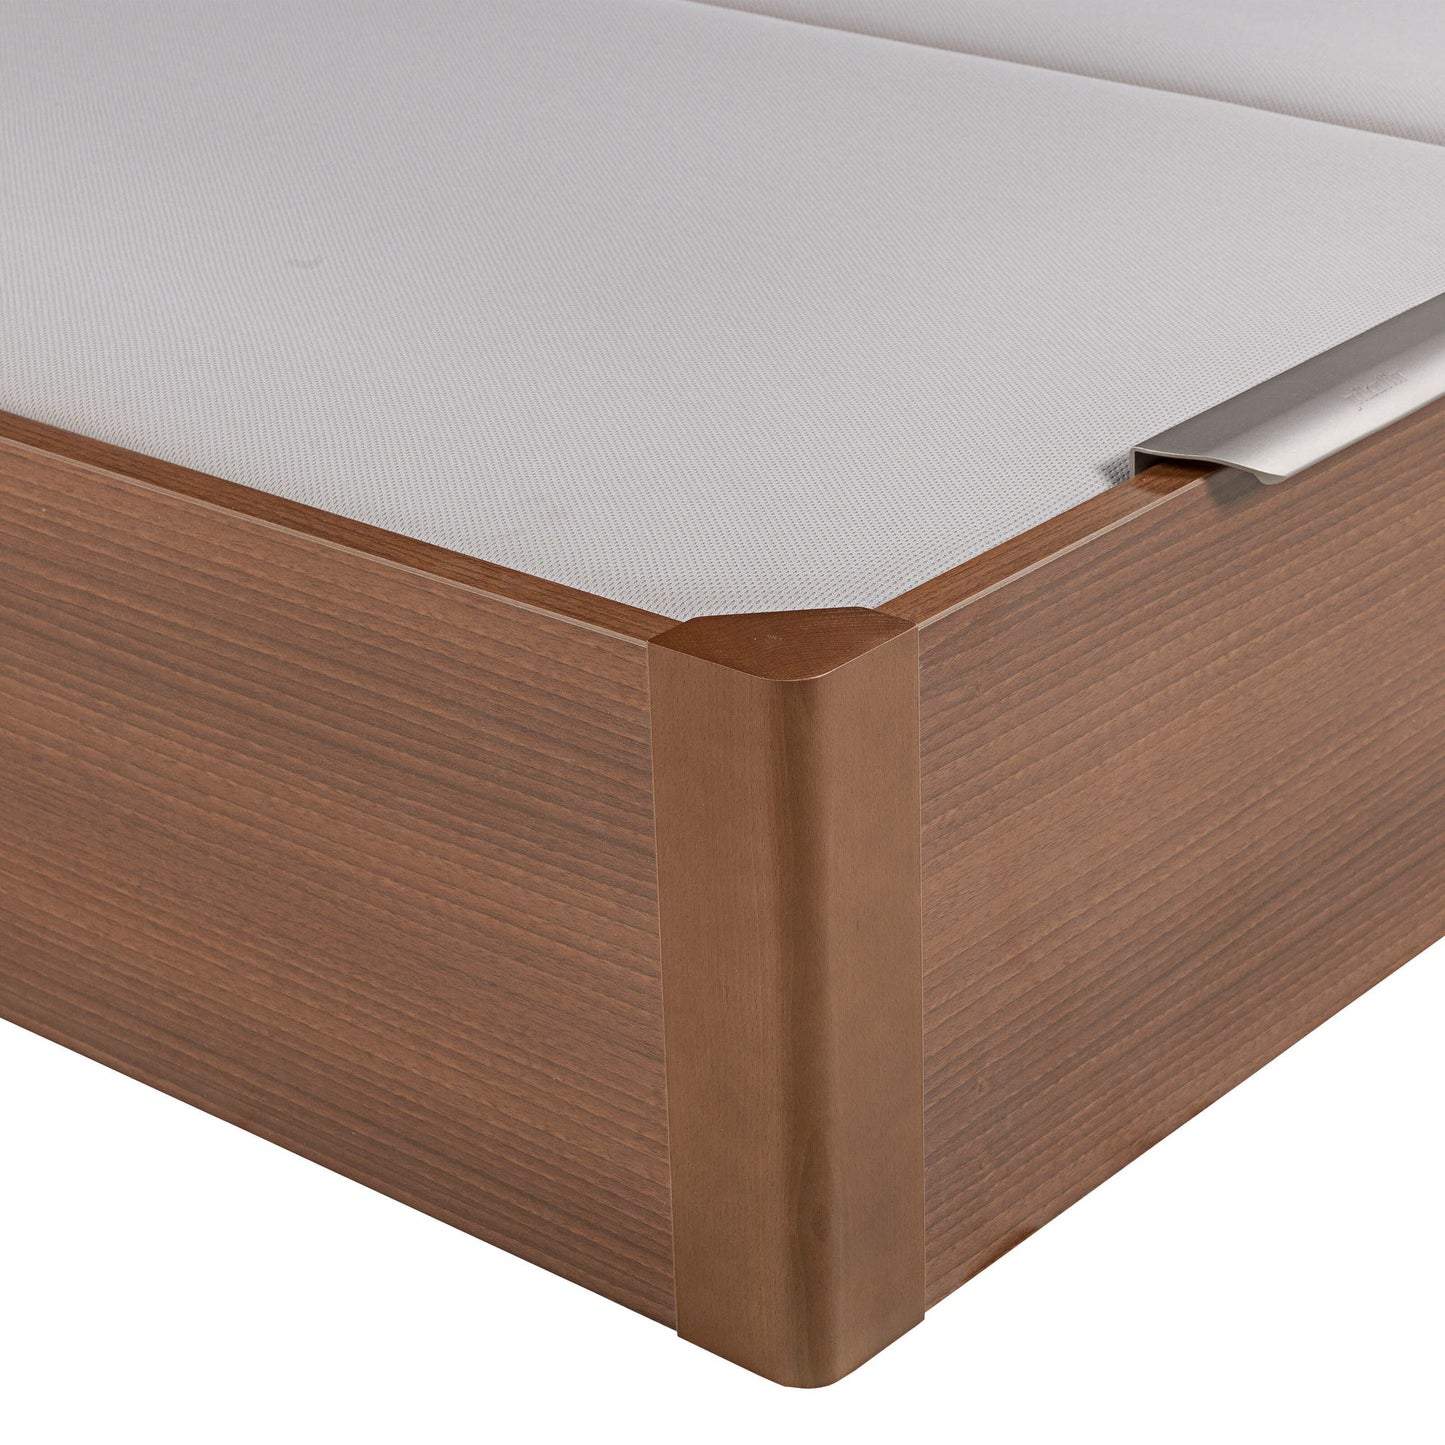 Canapé abatible de madera de tapa doble de color cerezo - DESIGN - 200x200